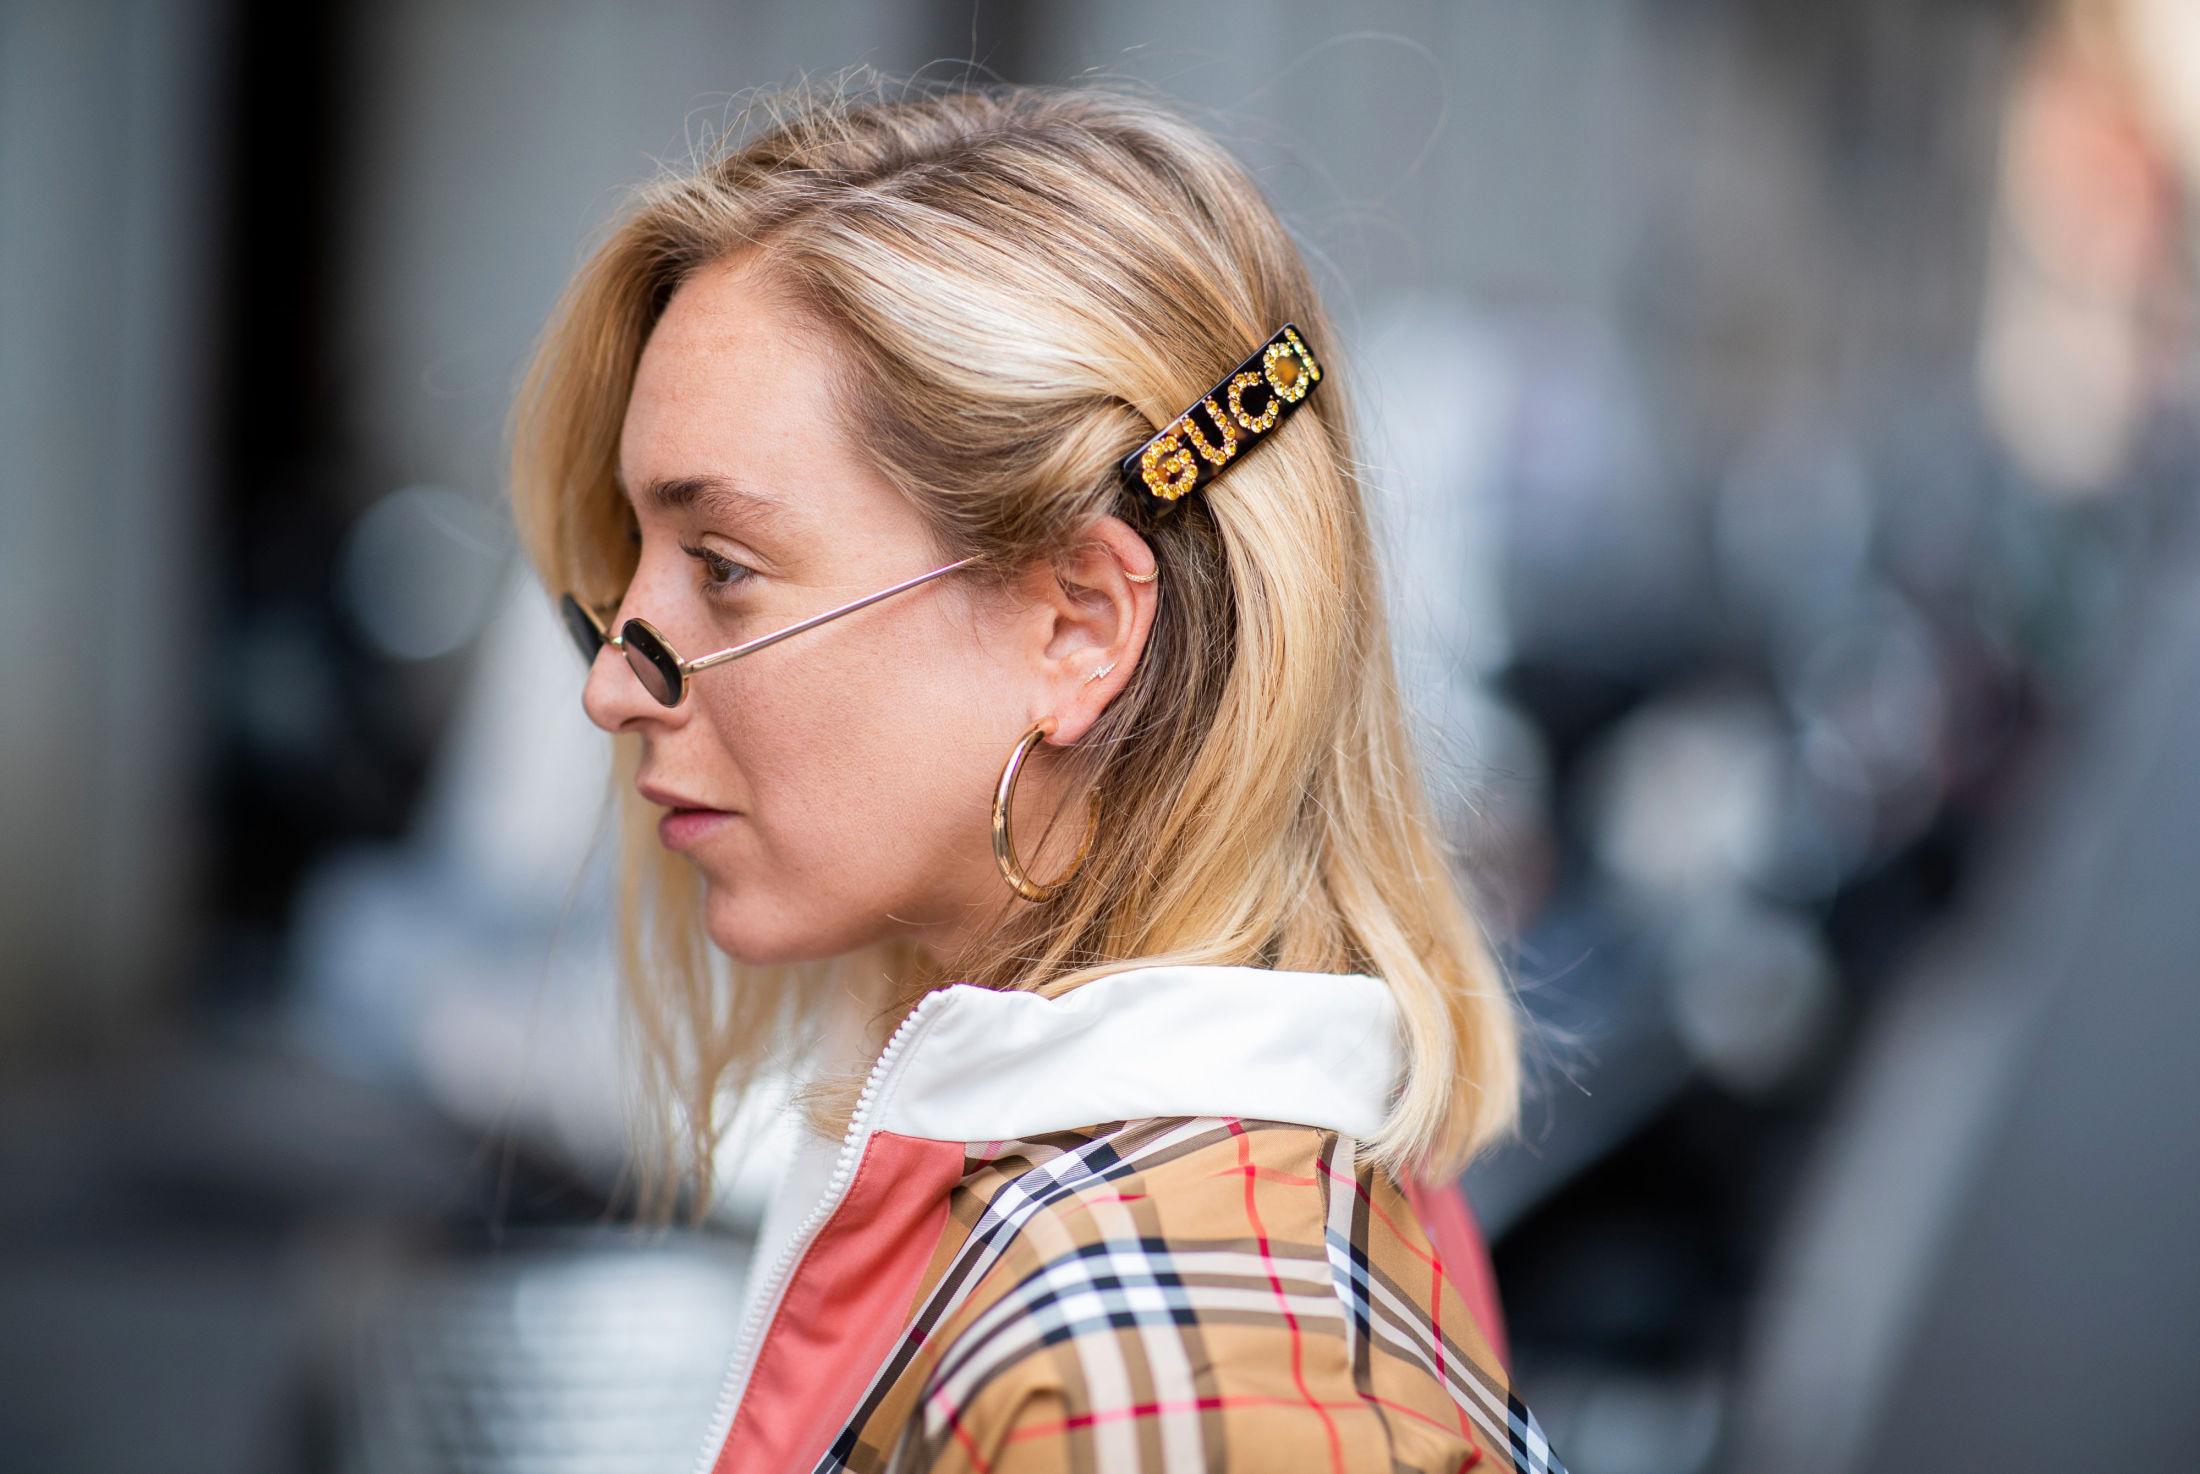 KUL DETALJ: Slik brukte Sonia Lyson hårspennen under moteuken i Milano. Foto: Getty Images.